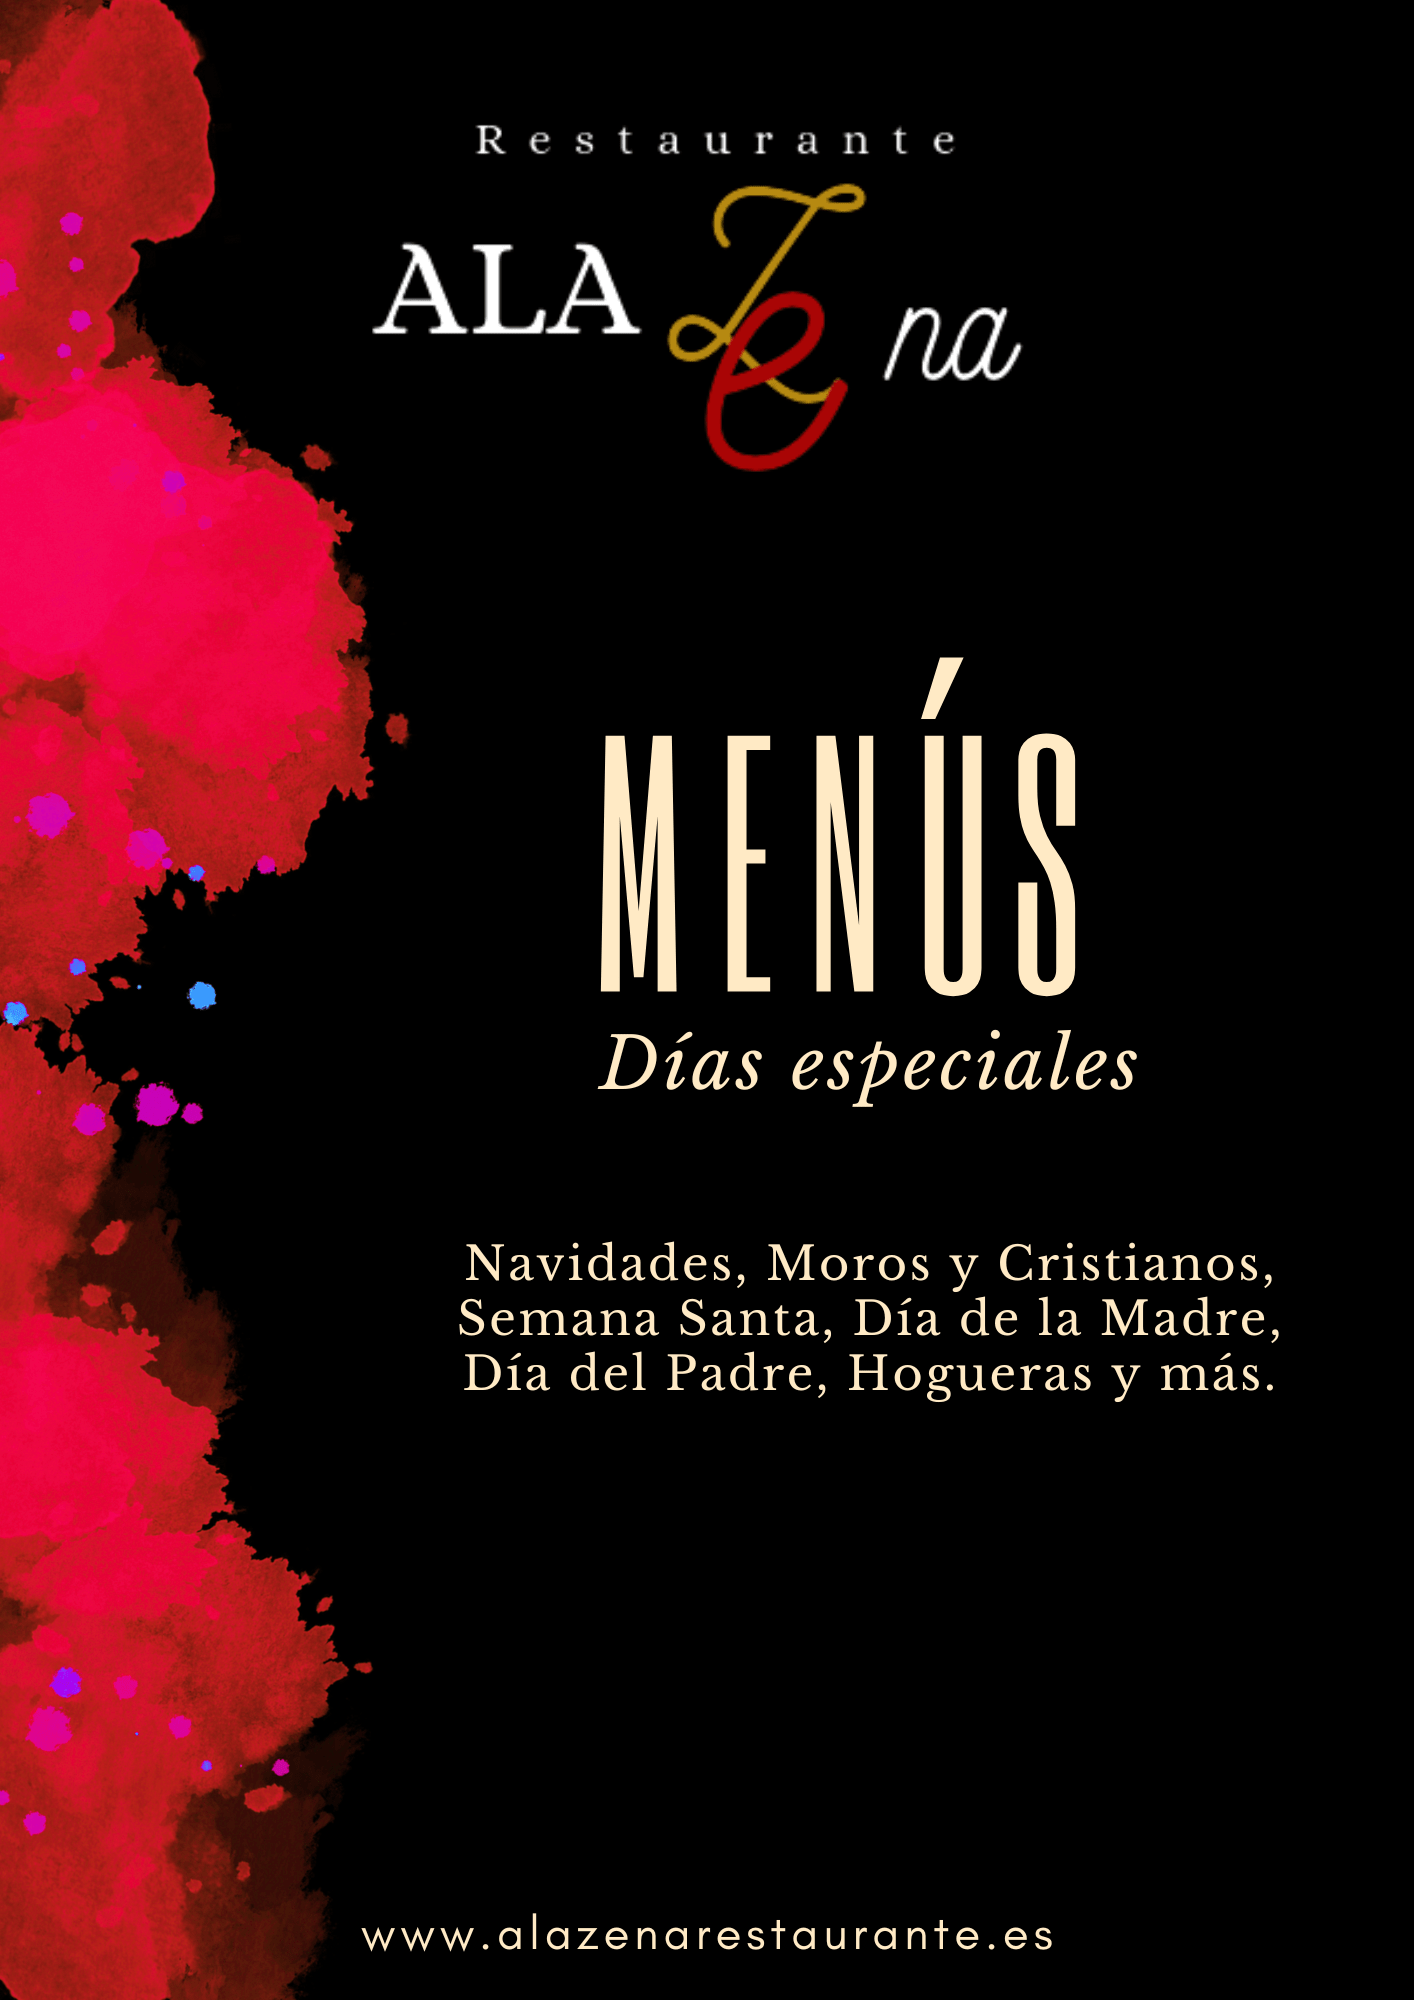 Menus especiales Alazena Restaurante San Vicente del Raspeig, Navidad, Hogueras, Dia del padre, dia de la Madre, Moros y Cristianos